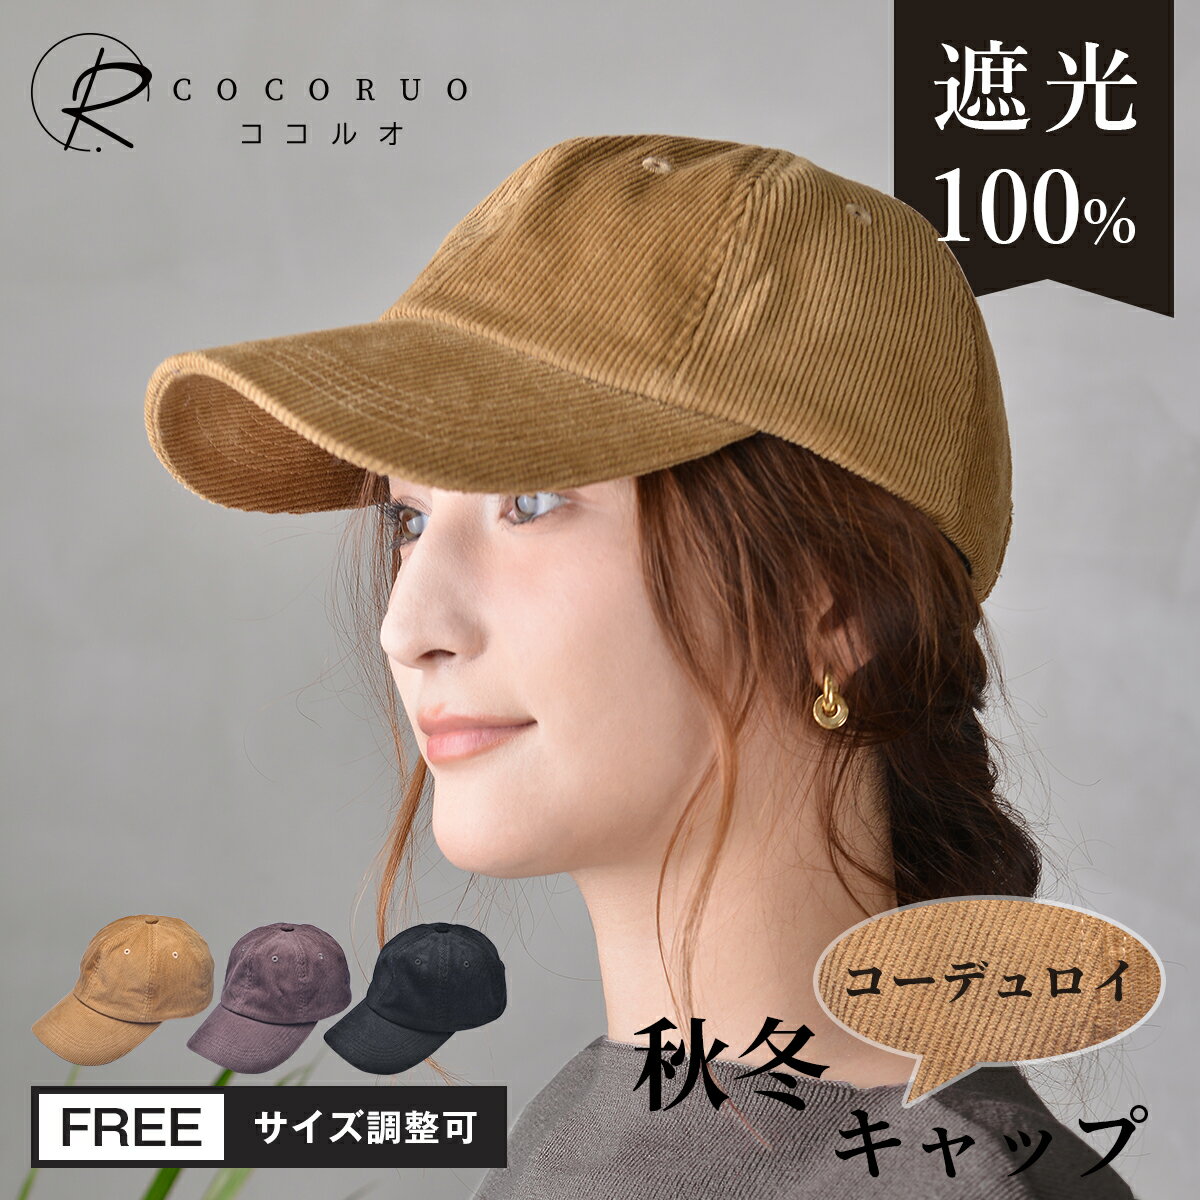 1,000円ポッキリ【完全遮光 キャップ】 帽子...の商品画像